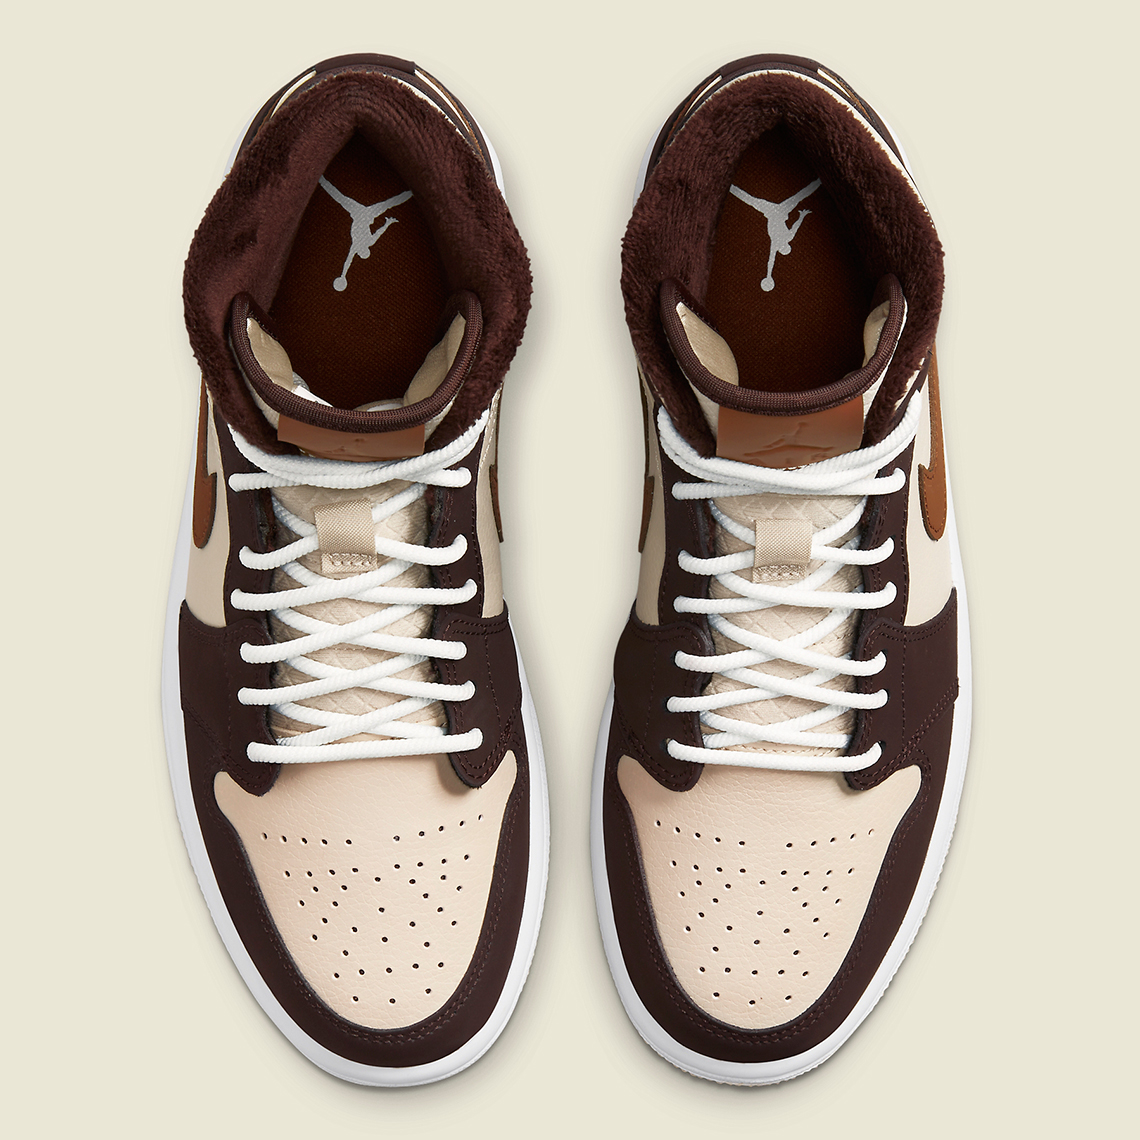 brown jordans shoes